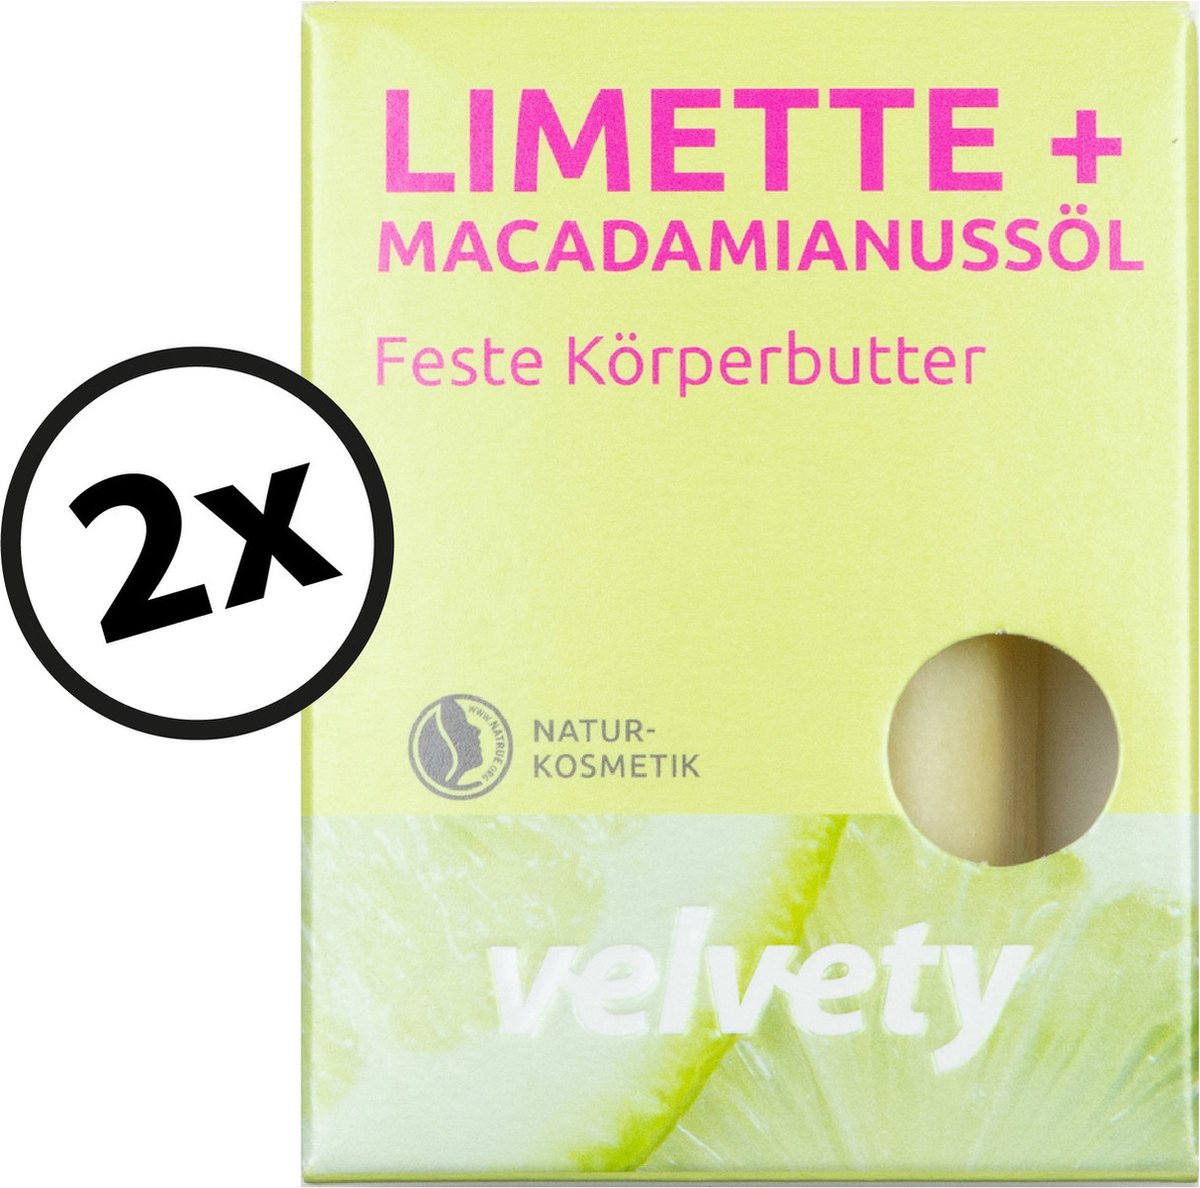 2 x body butter bar lime + macadamia nut oil 60 gr